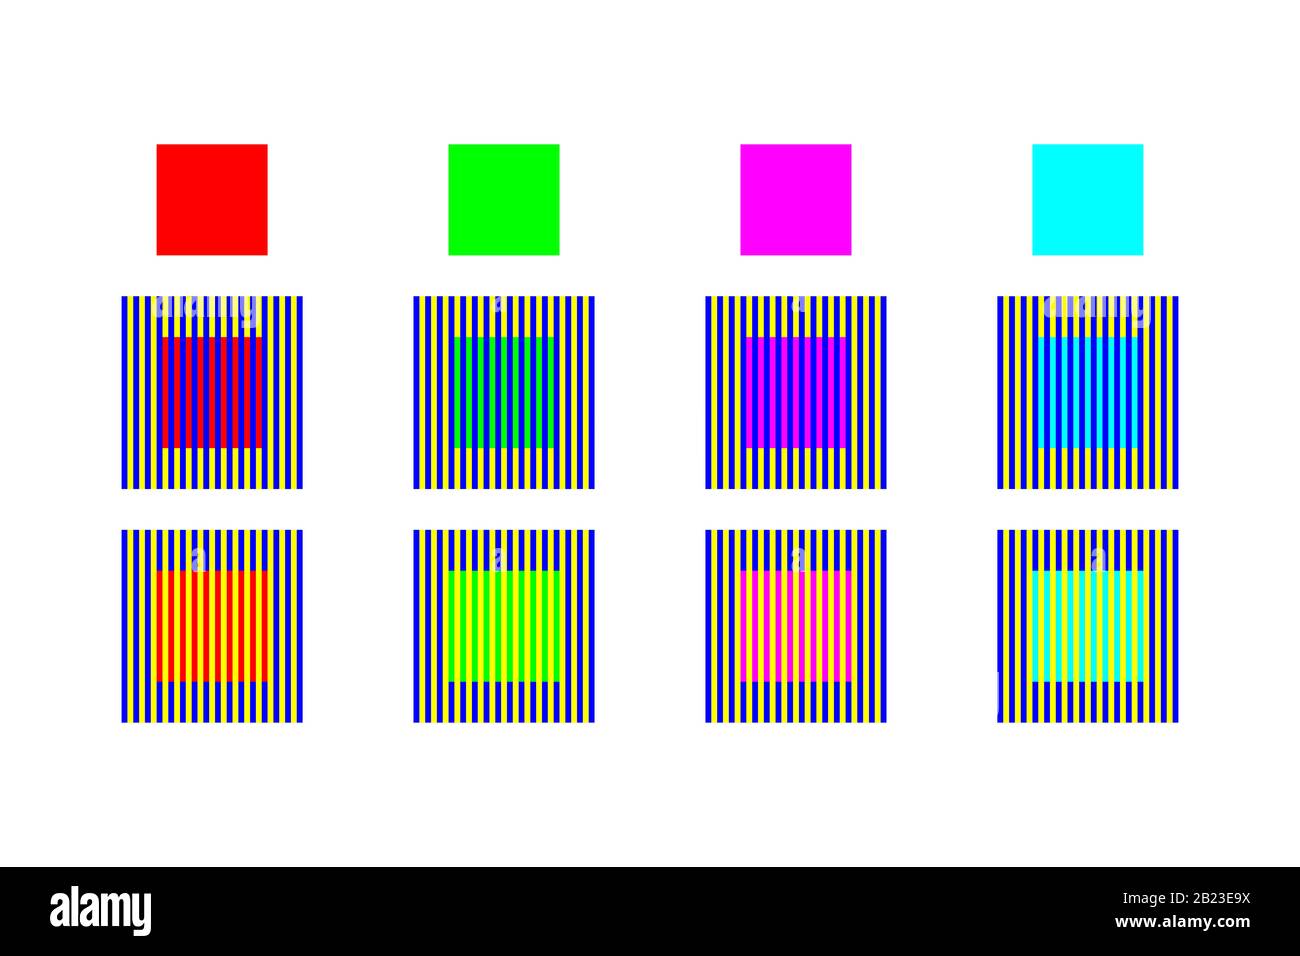 Farboptische Täuschung durch Assimilation und Kontrast. Die vier verschiedenen Farbfelder scheinen unterschiedliche Farben zu bekommen Stockfoto